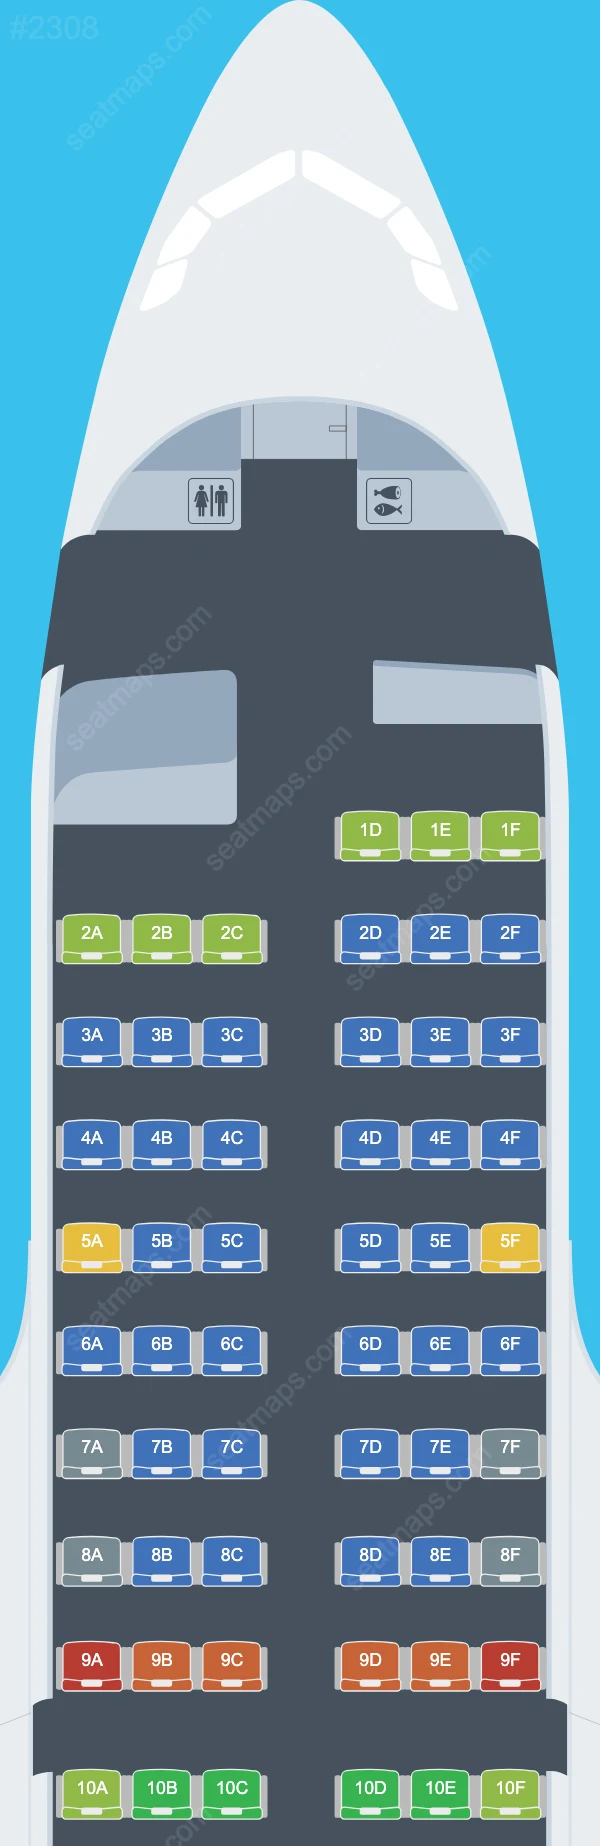 Air France Airbus A318 Seat Maps A318-100 V.1